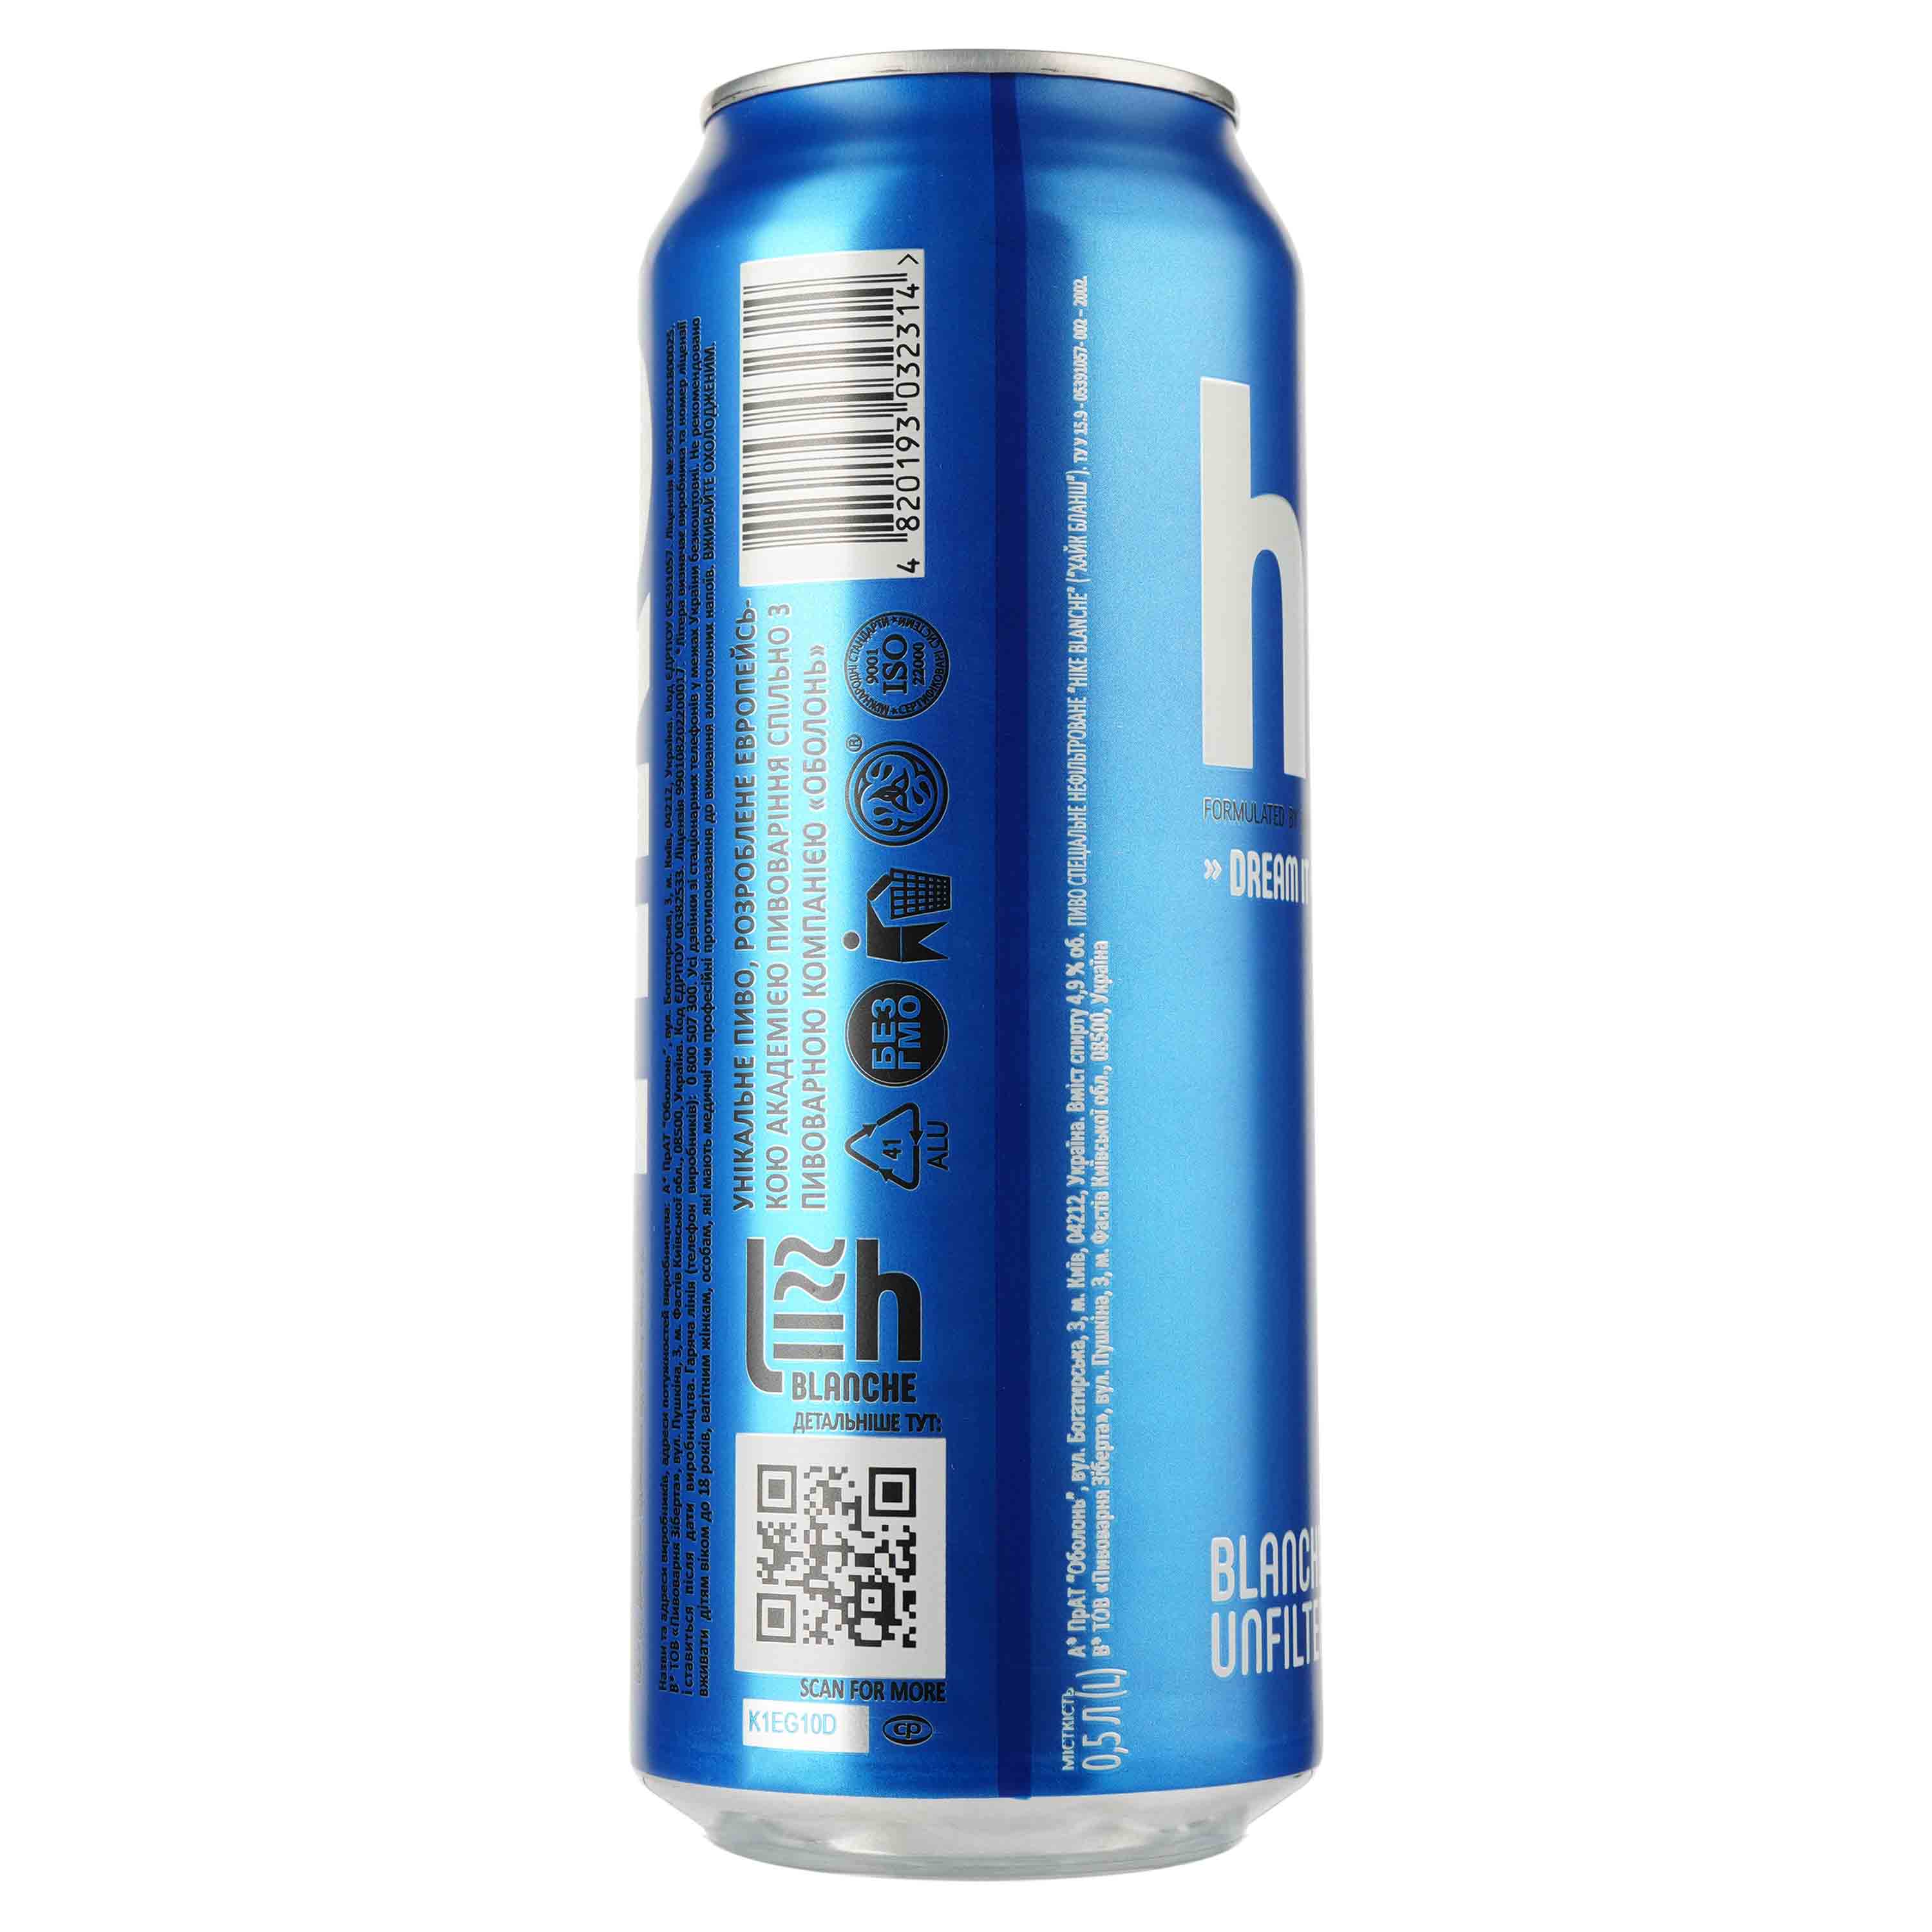 Пиво Hike Blanche, светлое, 4,9%, ж/б, 0,5 л (781555) - фото 2